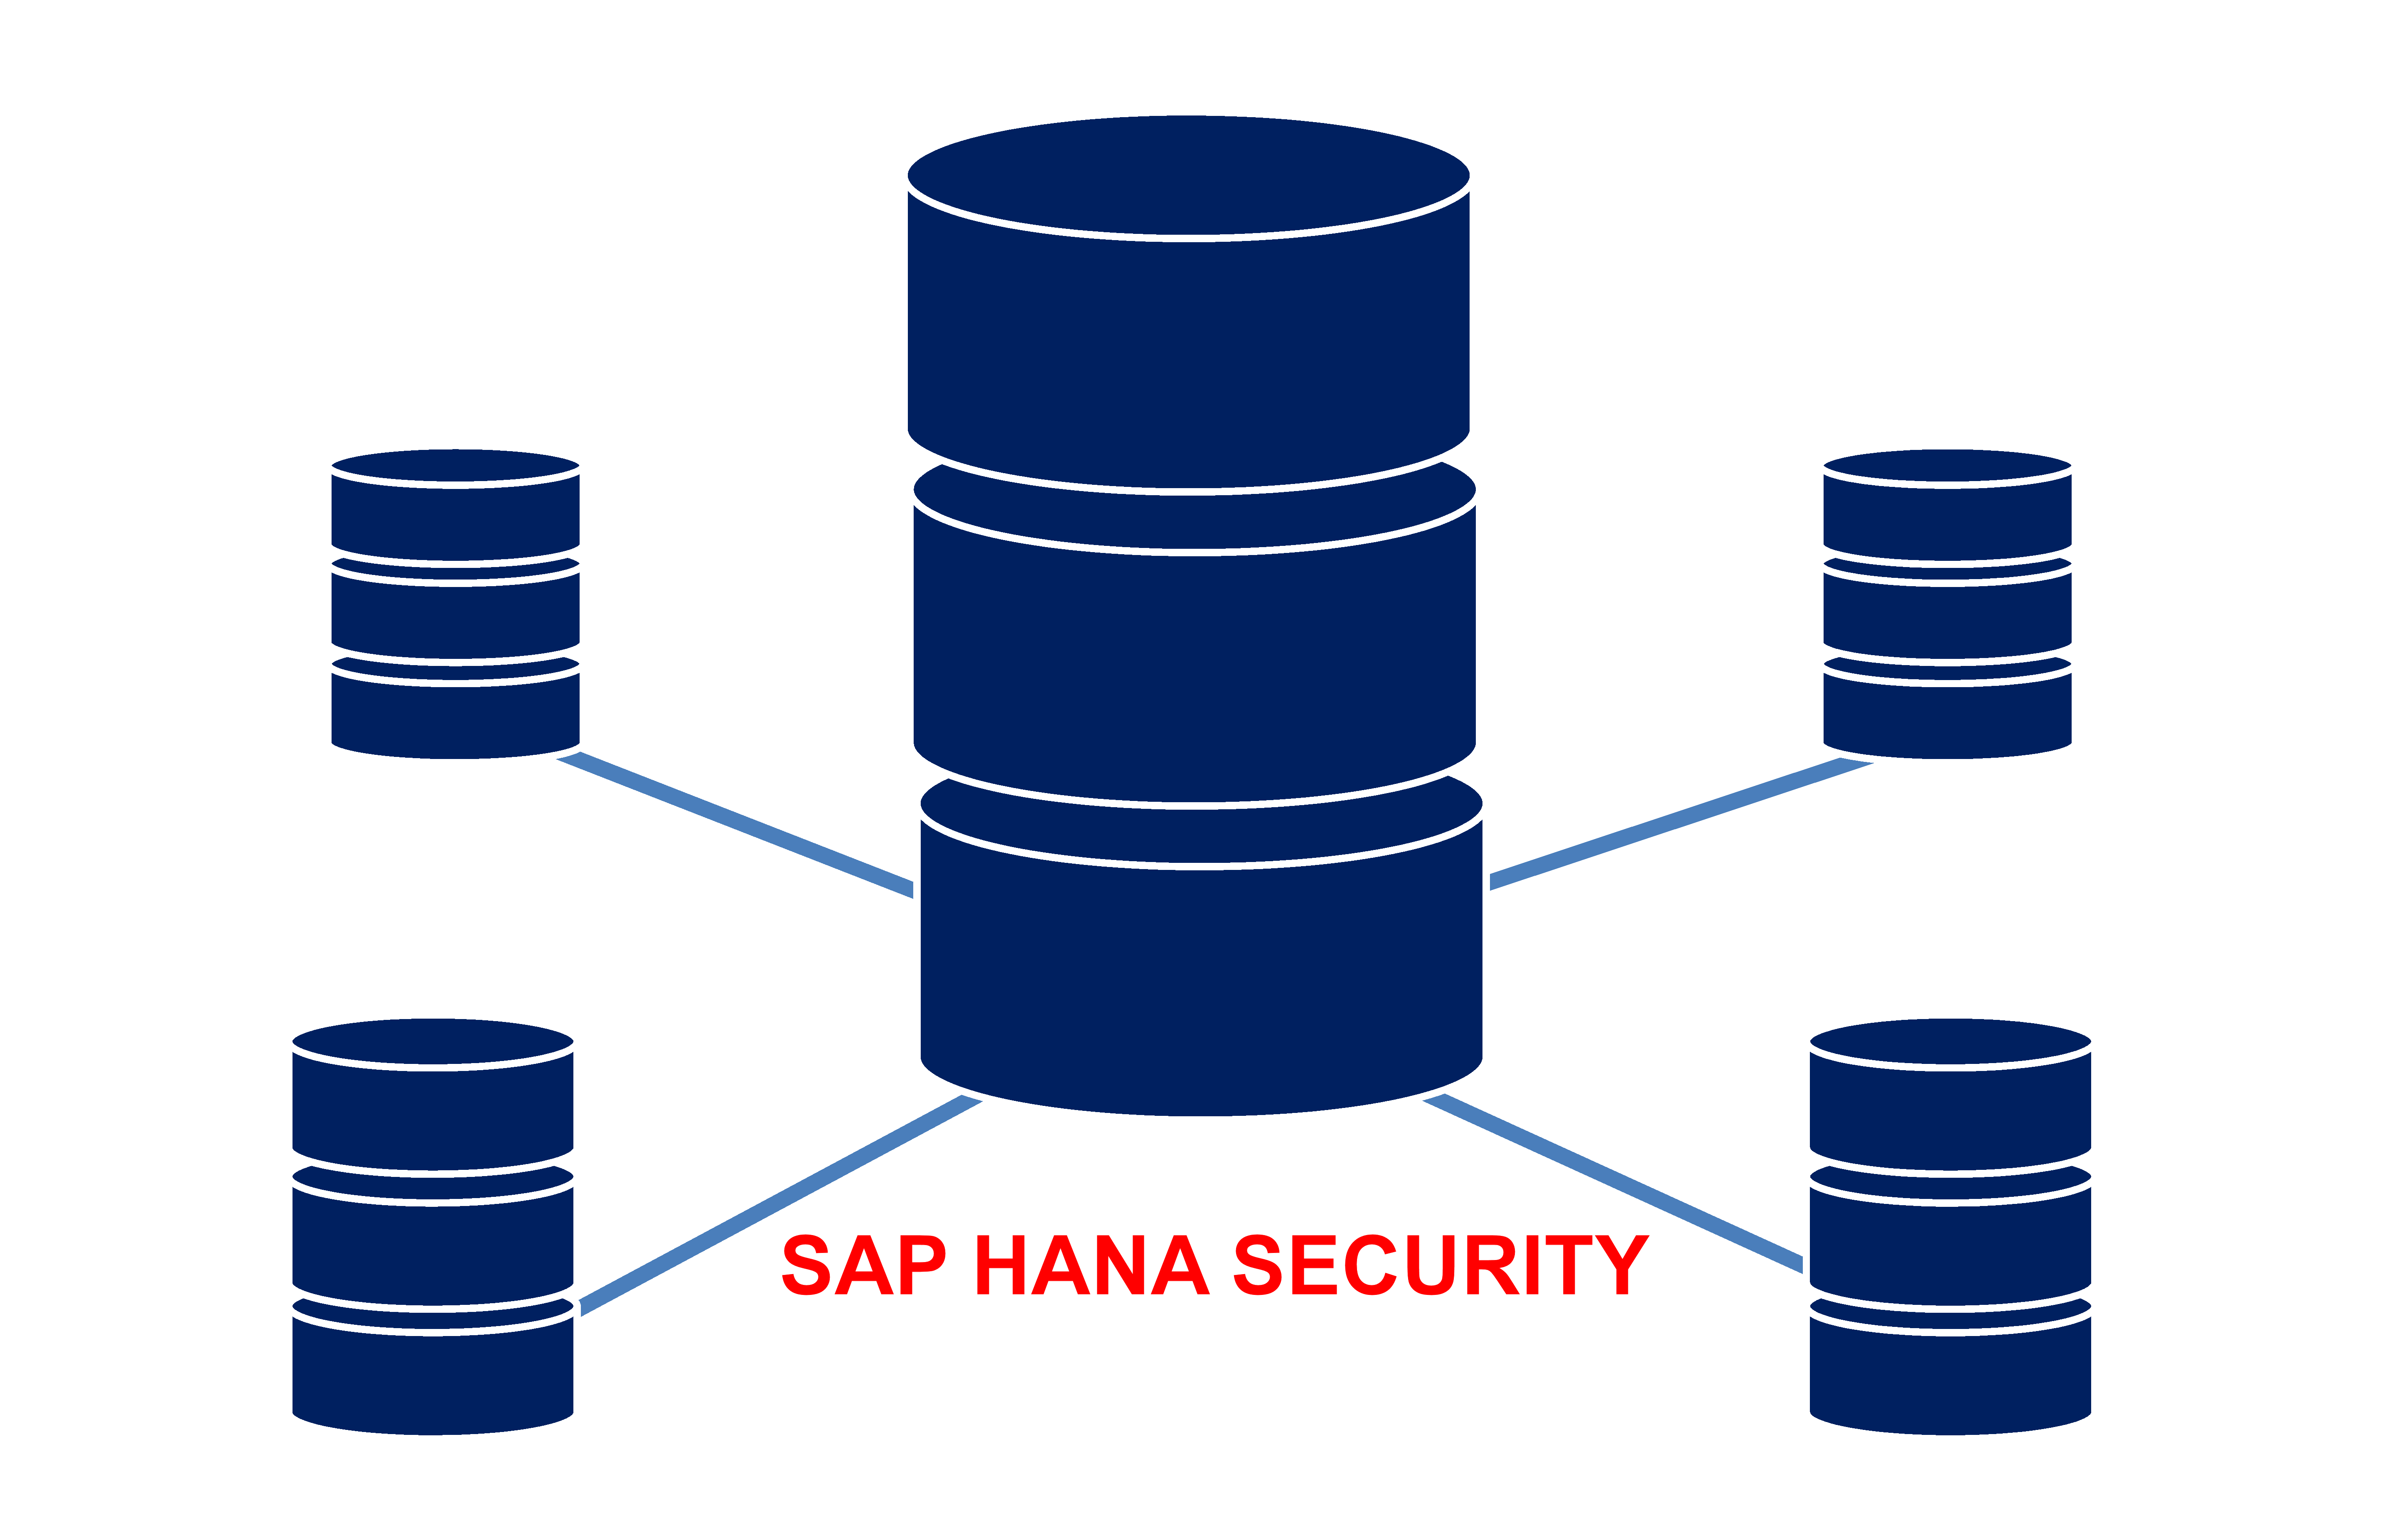 SAP HANA Security